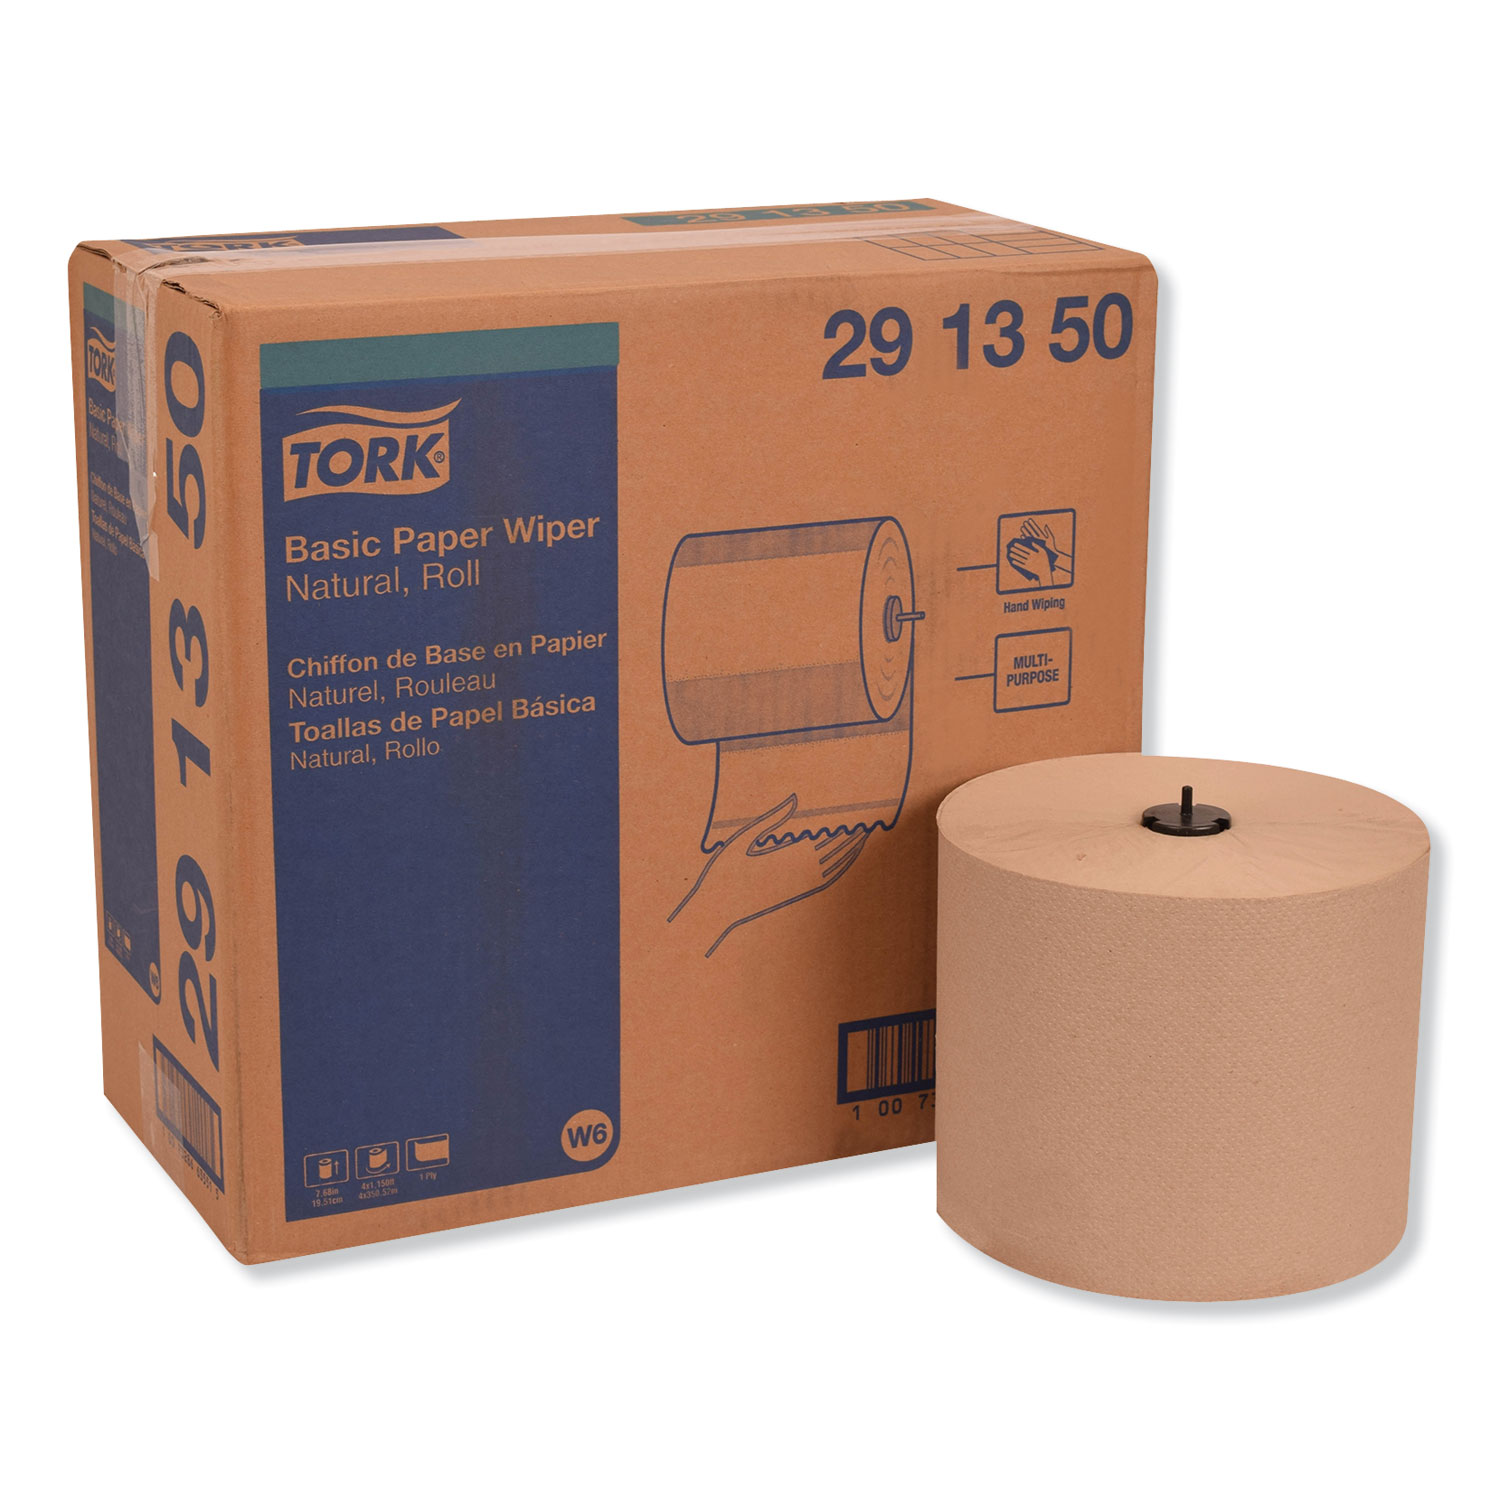  Tork 291350 Basic Paper Wiper Roll Towel, 7.68 x 1150 ft, Natural, 4 Rolls/Carton (TRK291350) 